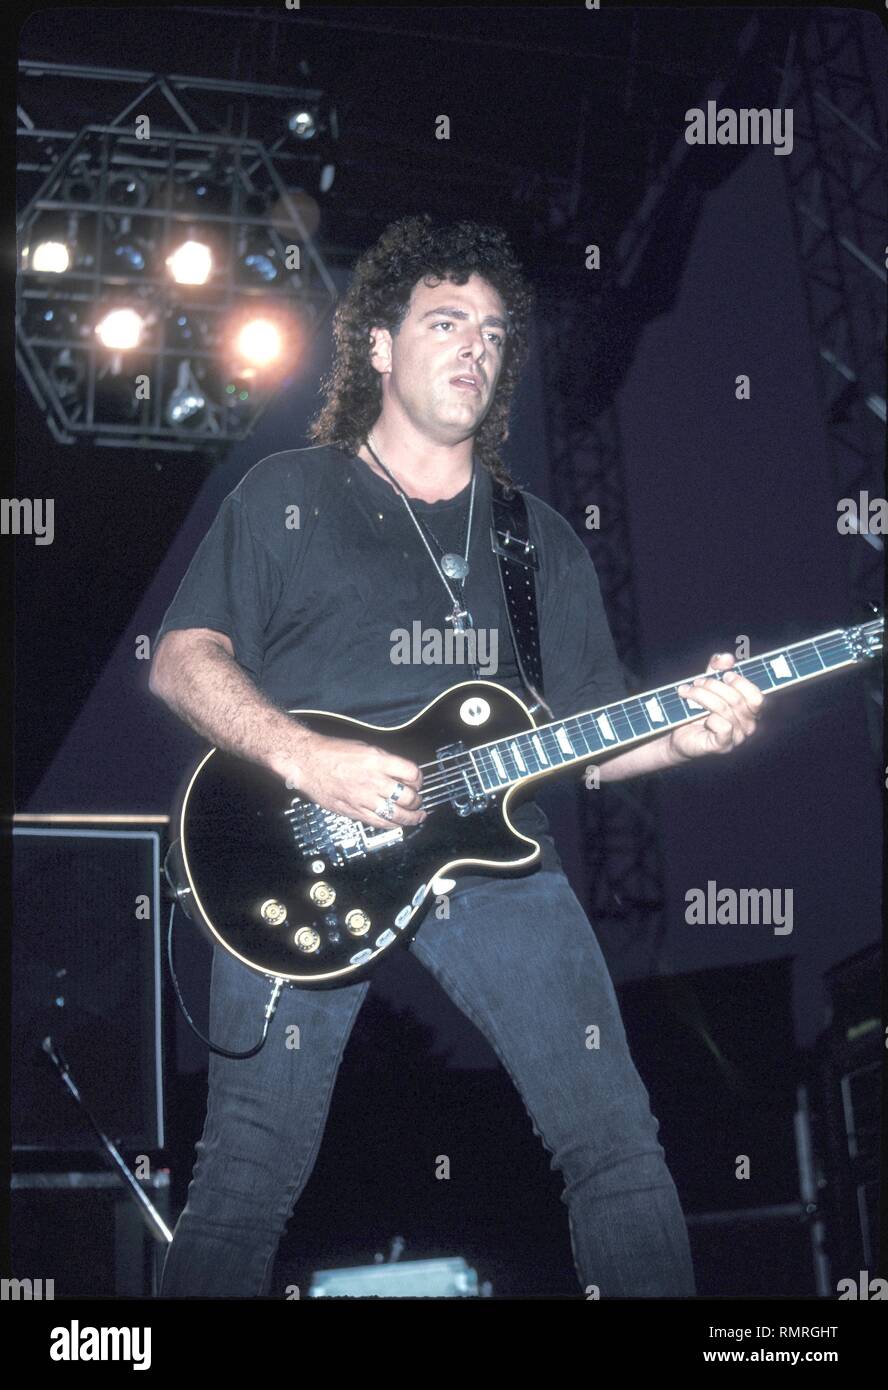 Guitarrista, cantante y Neal Schon, mejor conocido por su trabajo con la viaje, está demostrado actuar en el escenario durante concierto 'live' apariencia con su banda en solitario